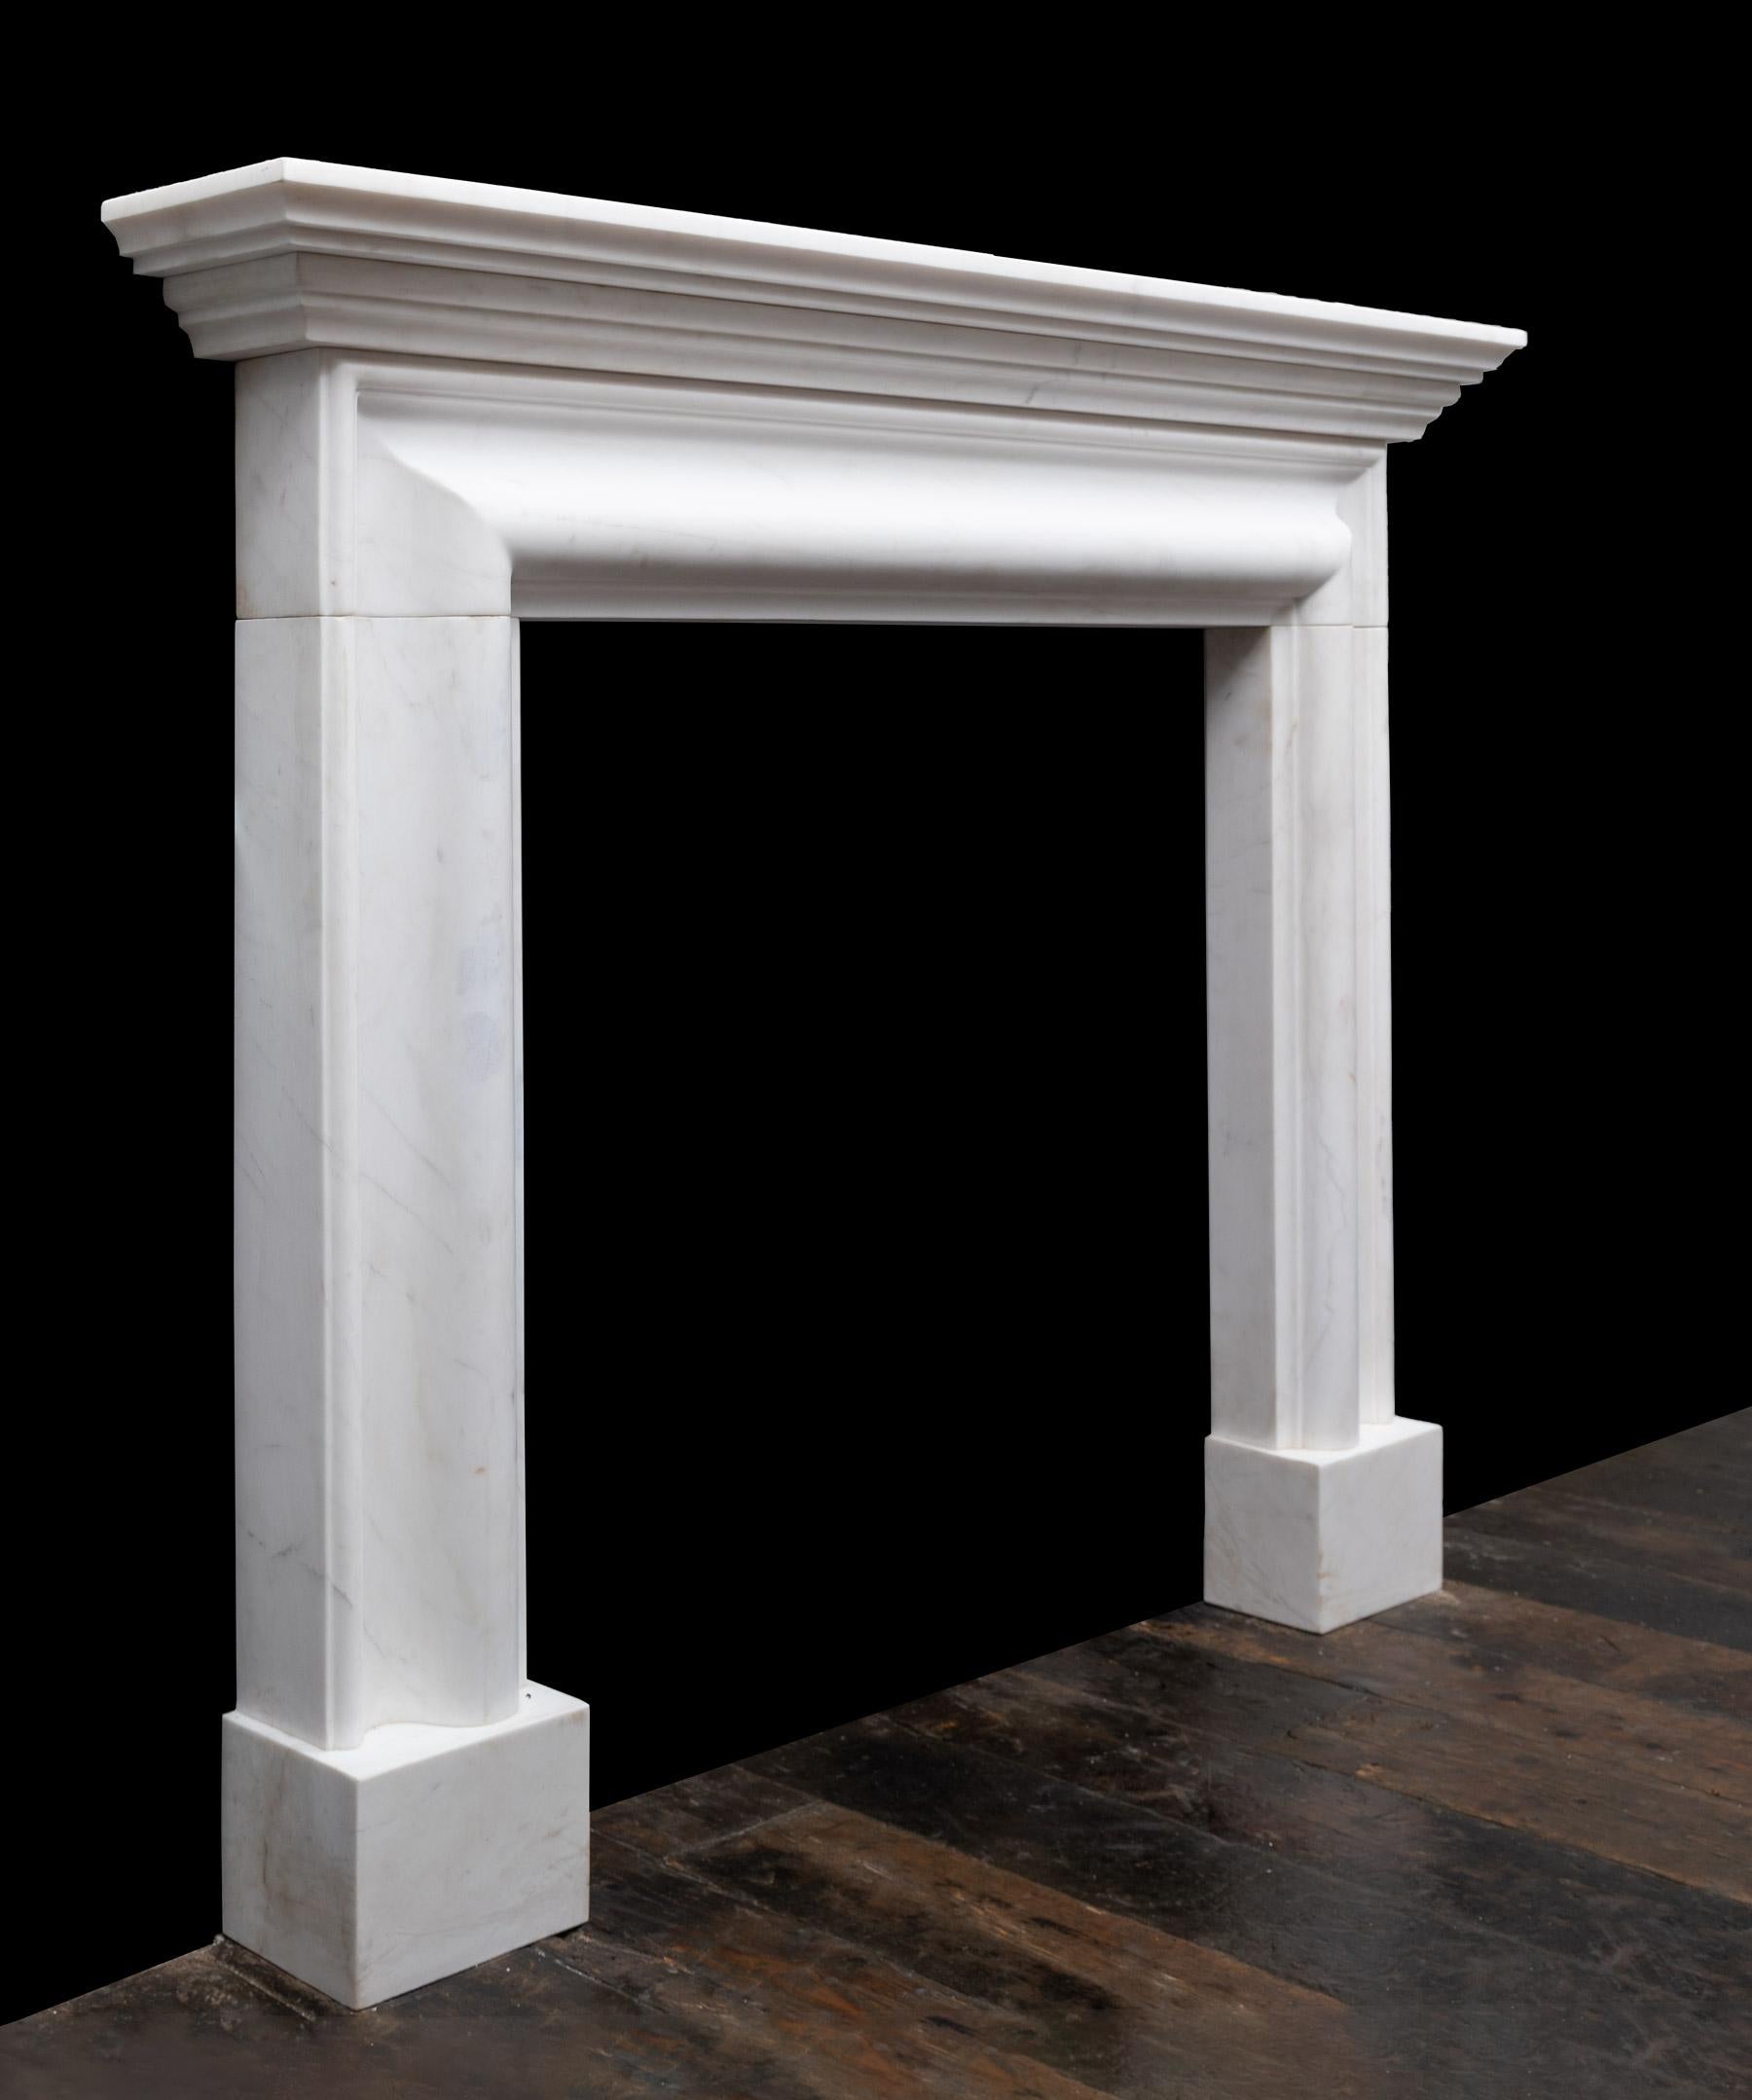 Ein stilvolles und modernes Kamindesign aus weißem, statuarischem Marmor. Der Kamin hat einen profilierten Rahmen auf schlichten Sockeln mit einem gestuften Gesims auf der Oberseite.

Ein klassisches Design, das in Europa seit über dreihundert